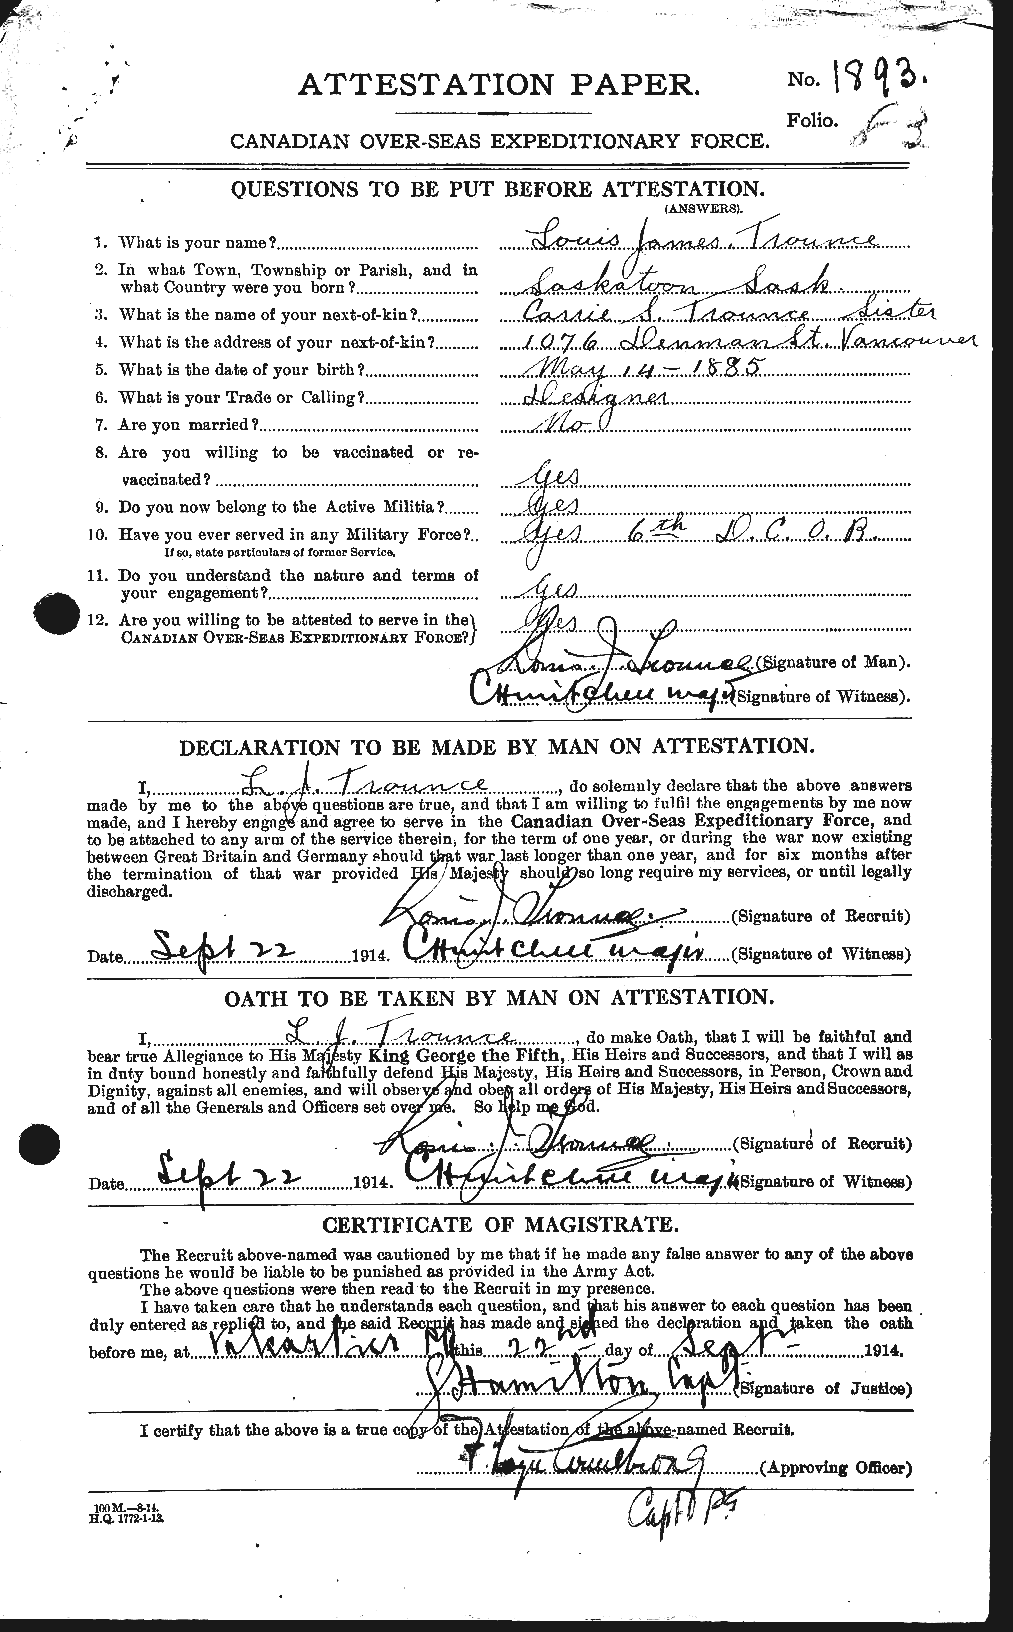 Dossiers du Personnel de la Première Guerre mondiale - CEC 640453a